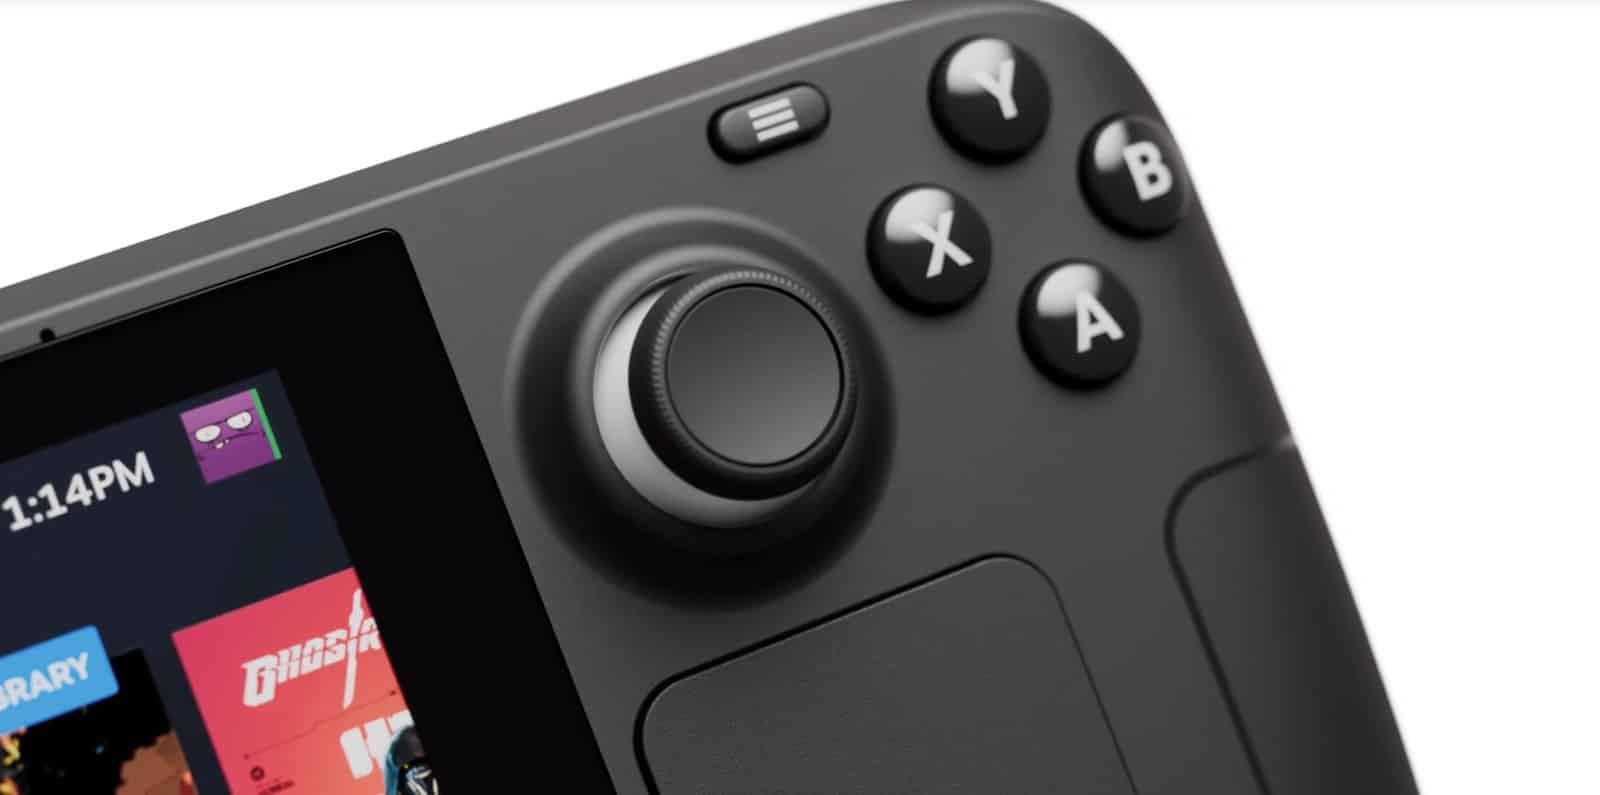 Valve taşınabilir oyun cihazı Steam Deck'i tanıttı